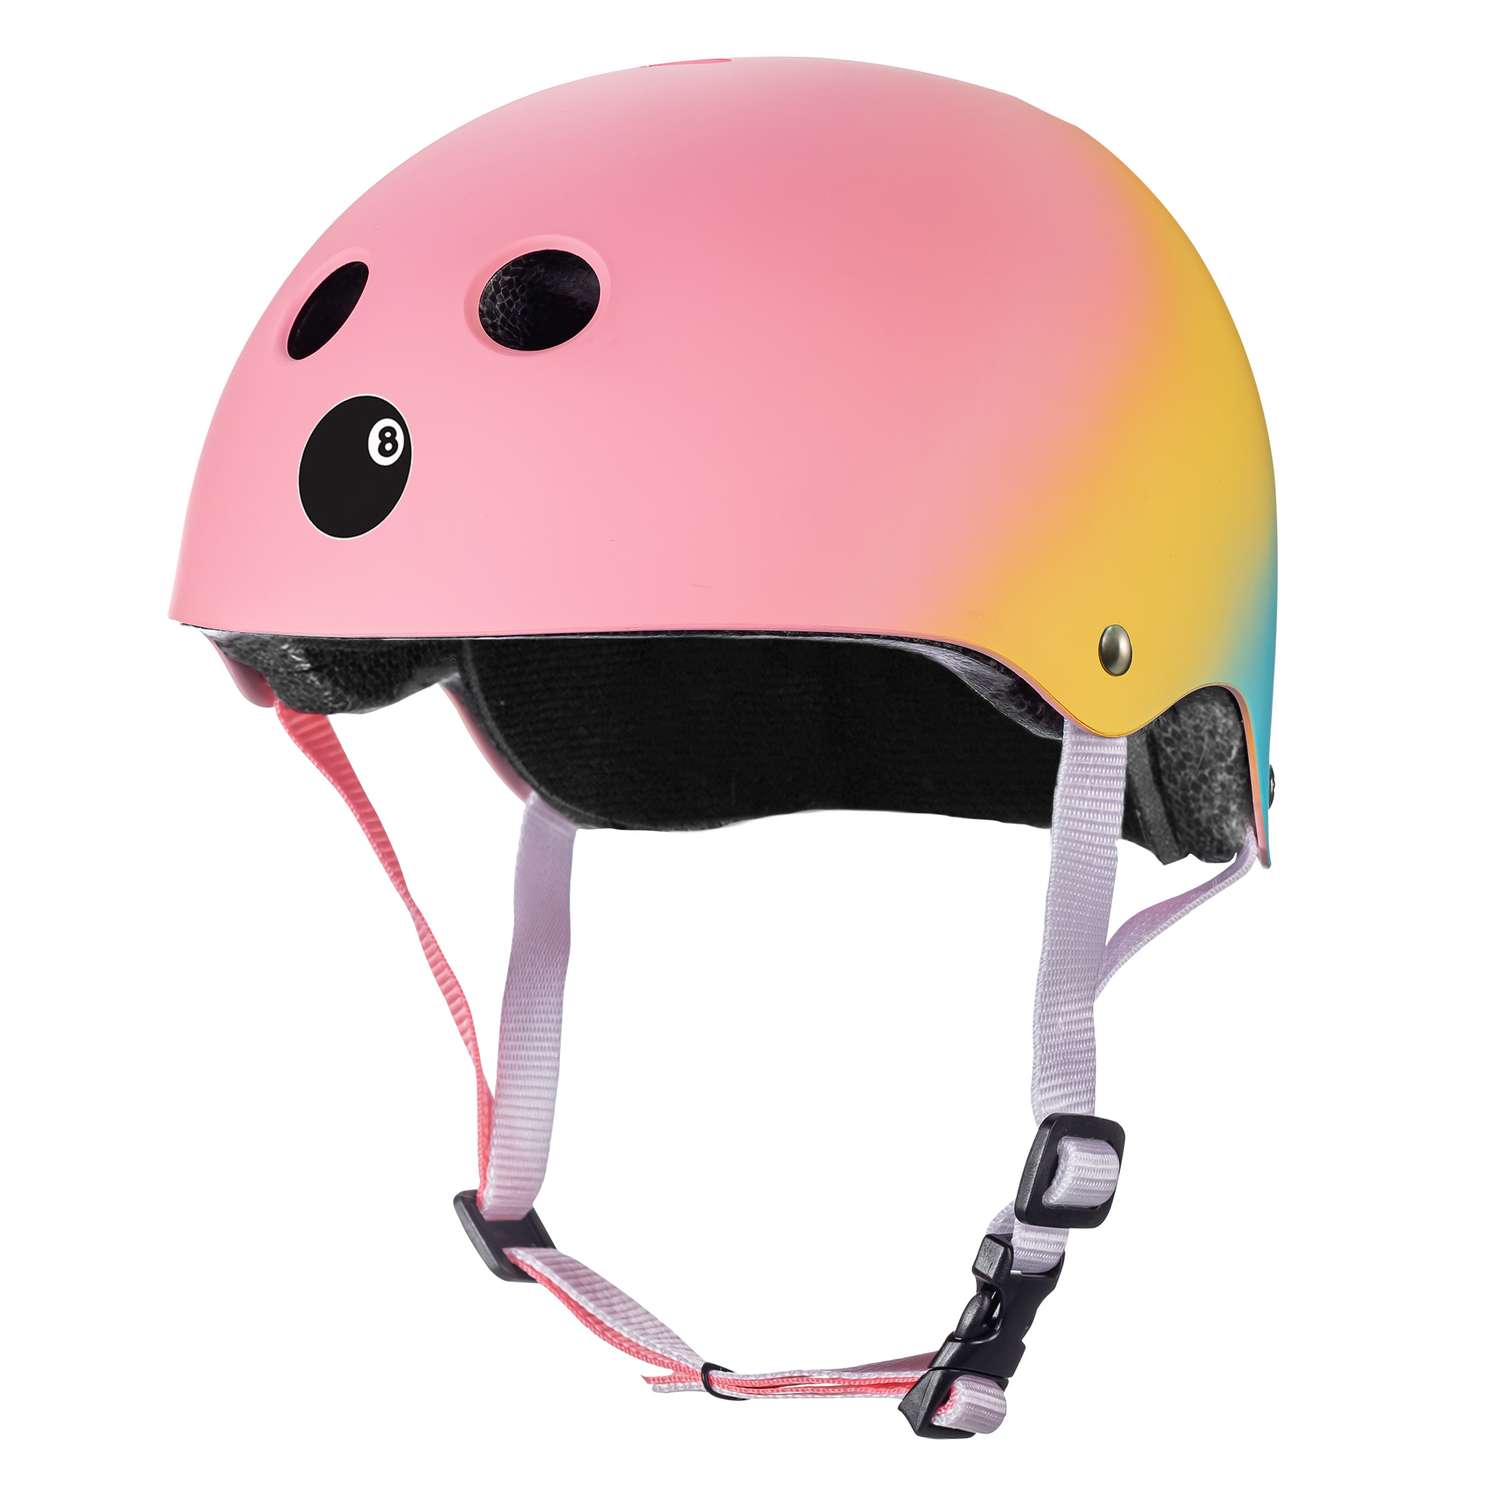 Шлем защитный спортивный Eight Ball Shaved Ice разноцветный детский размер L возраст 8+ обхват головы 52-56 см - фото 1